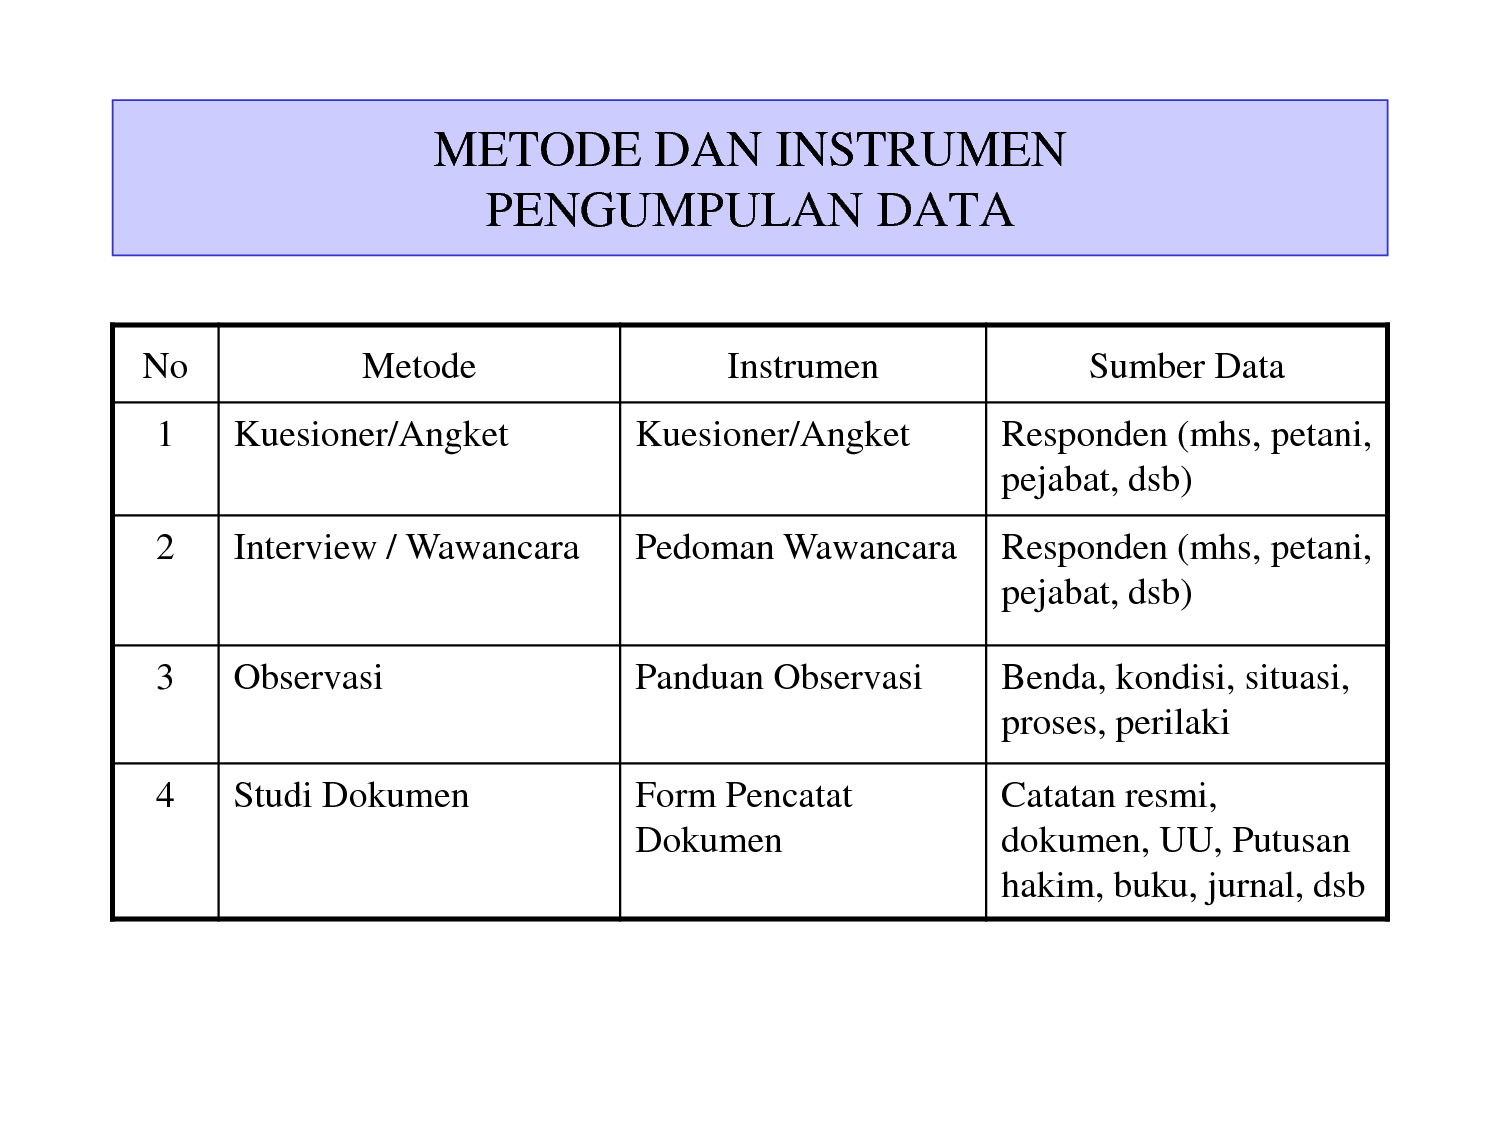 Metode pengumpulan data dengan mengisi lembar isian disebut metode